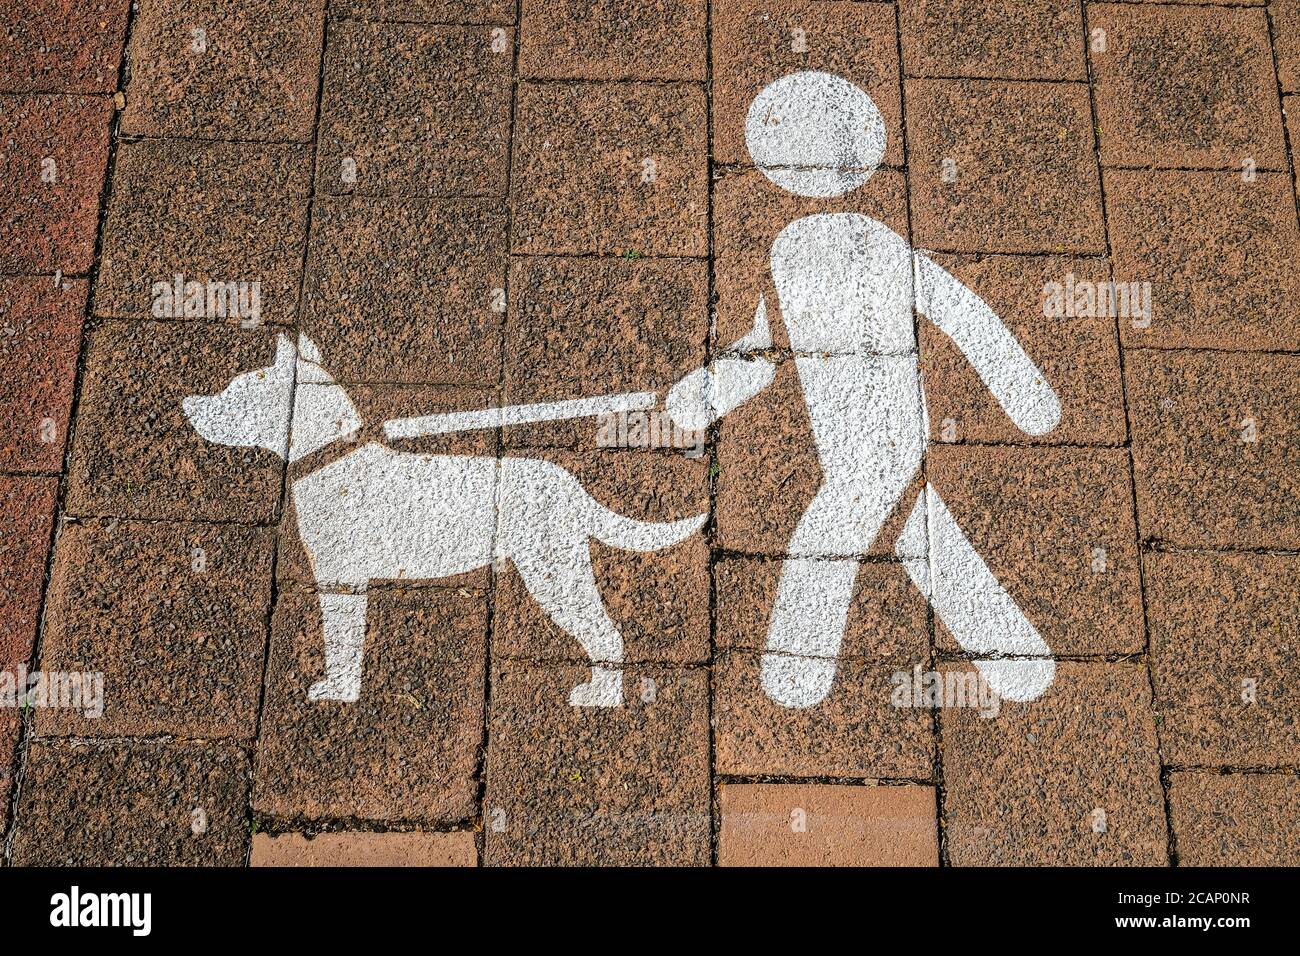 Segno che chiede ai proprietari del cane di mantenere i loro cani su un piombo o guinzaglio, dipinto sul sentiero. Foto Stock